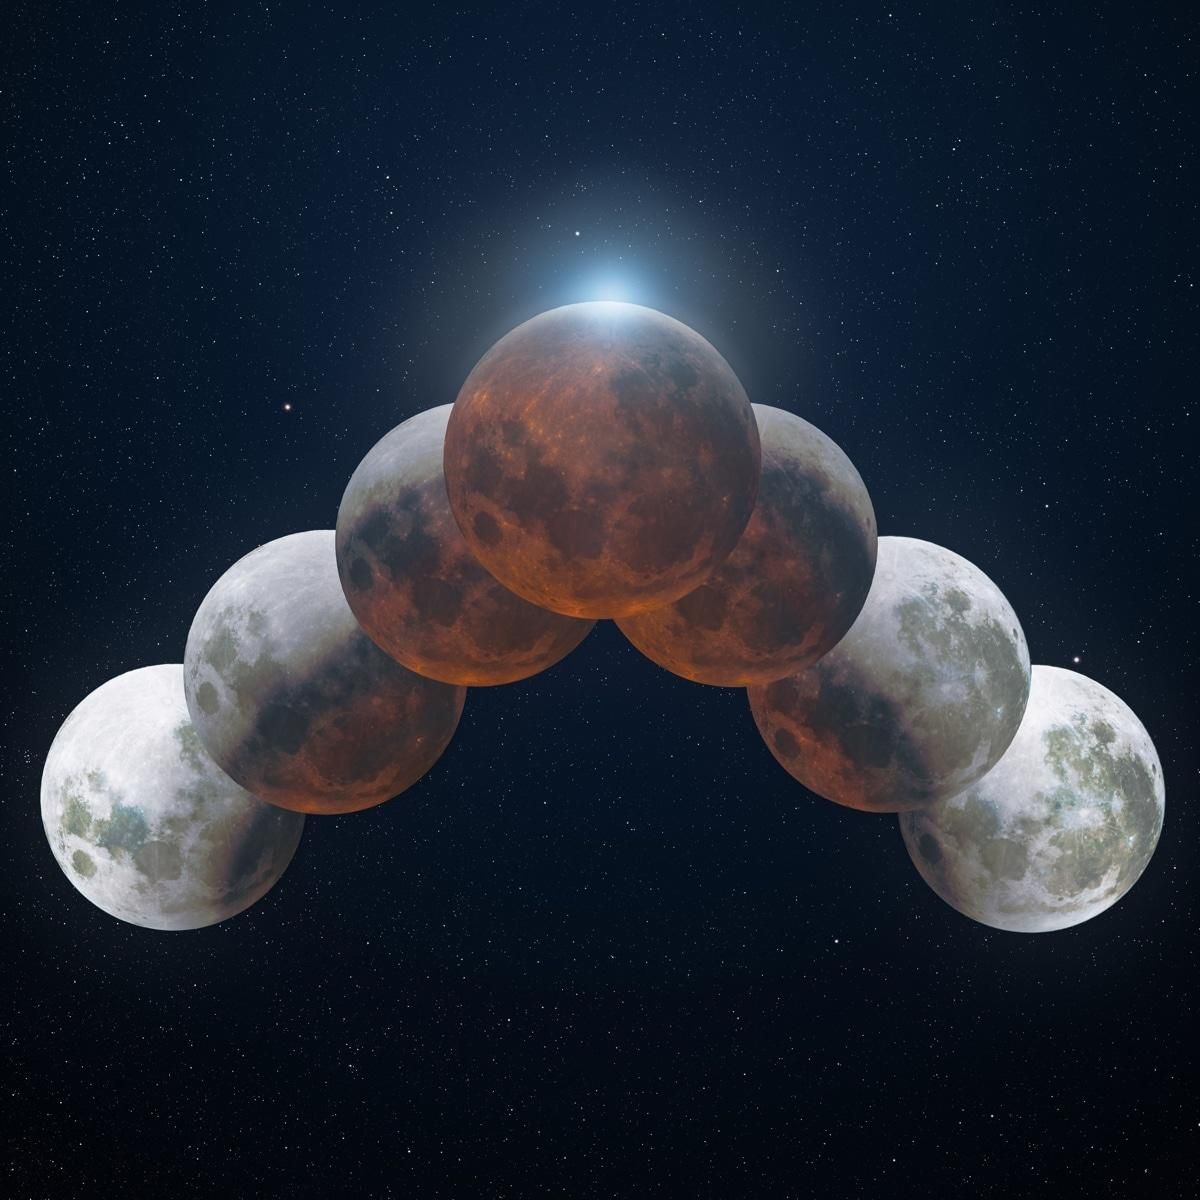 Фотографу удалось снять самое длинное лунное затмение за 500 лет: удивительное фото